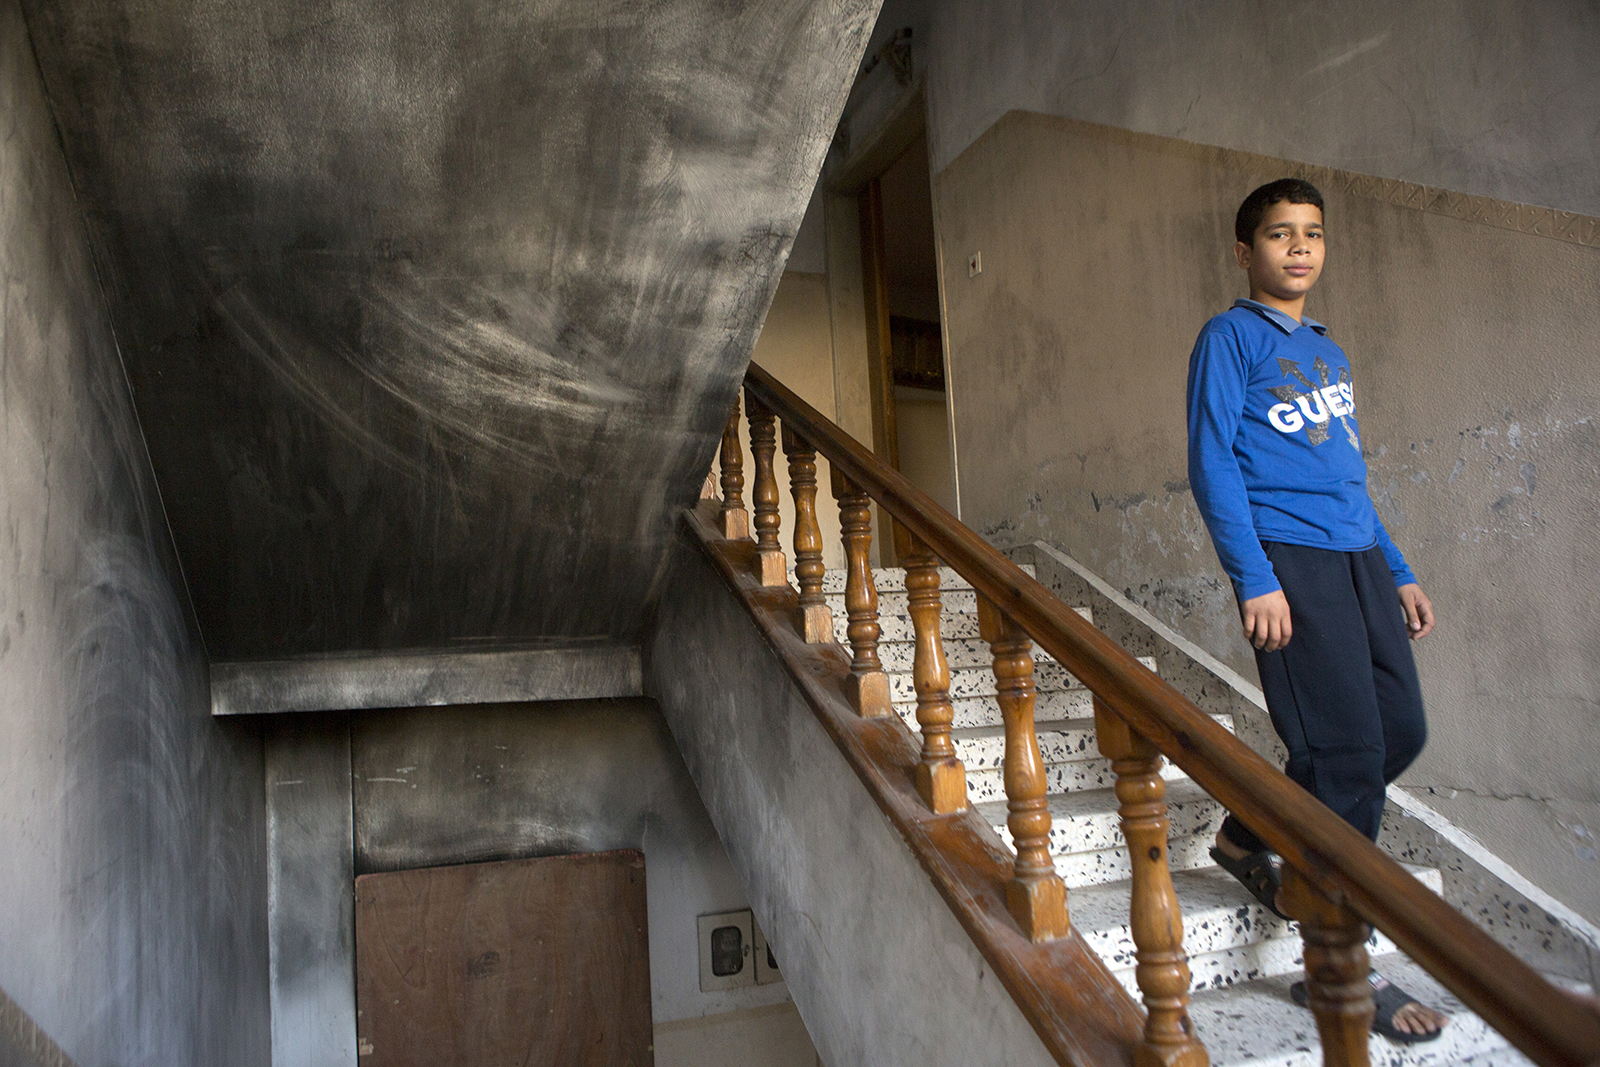  Ibrahim, Ismail, ihre Eltern und andere Geschwister leben noch immer in dem teilweise verbrannten Haus, das jederzeit einstürzen könnte.
